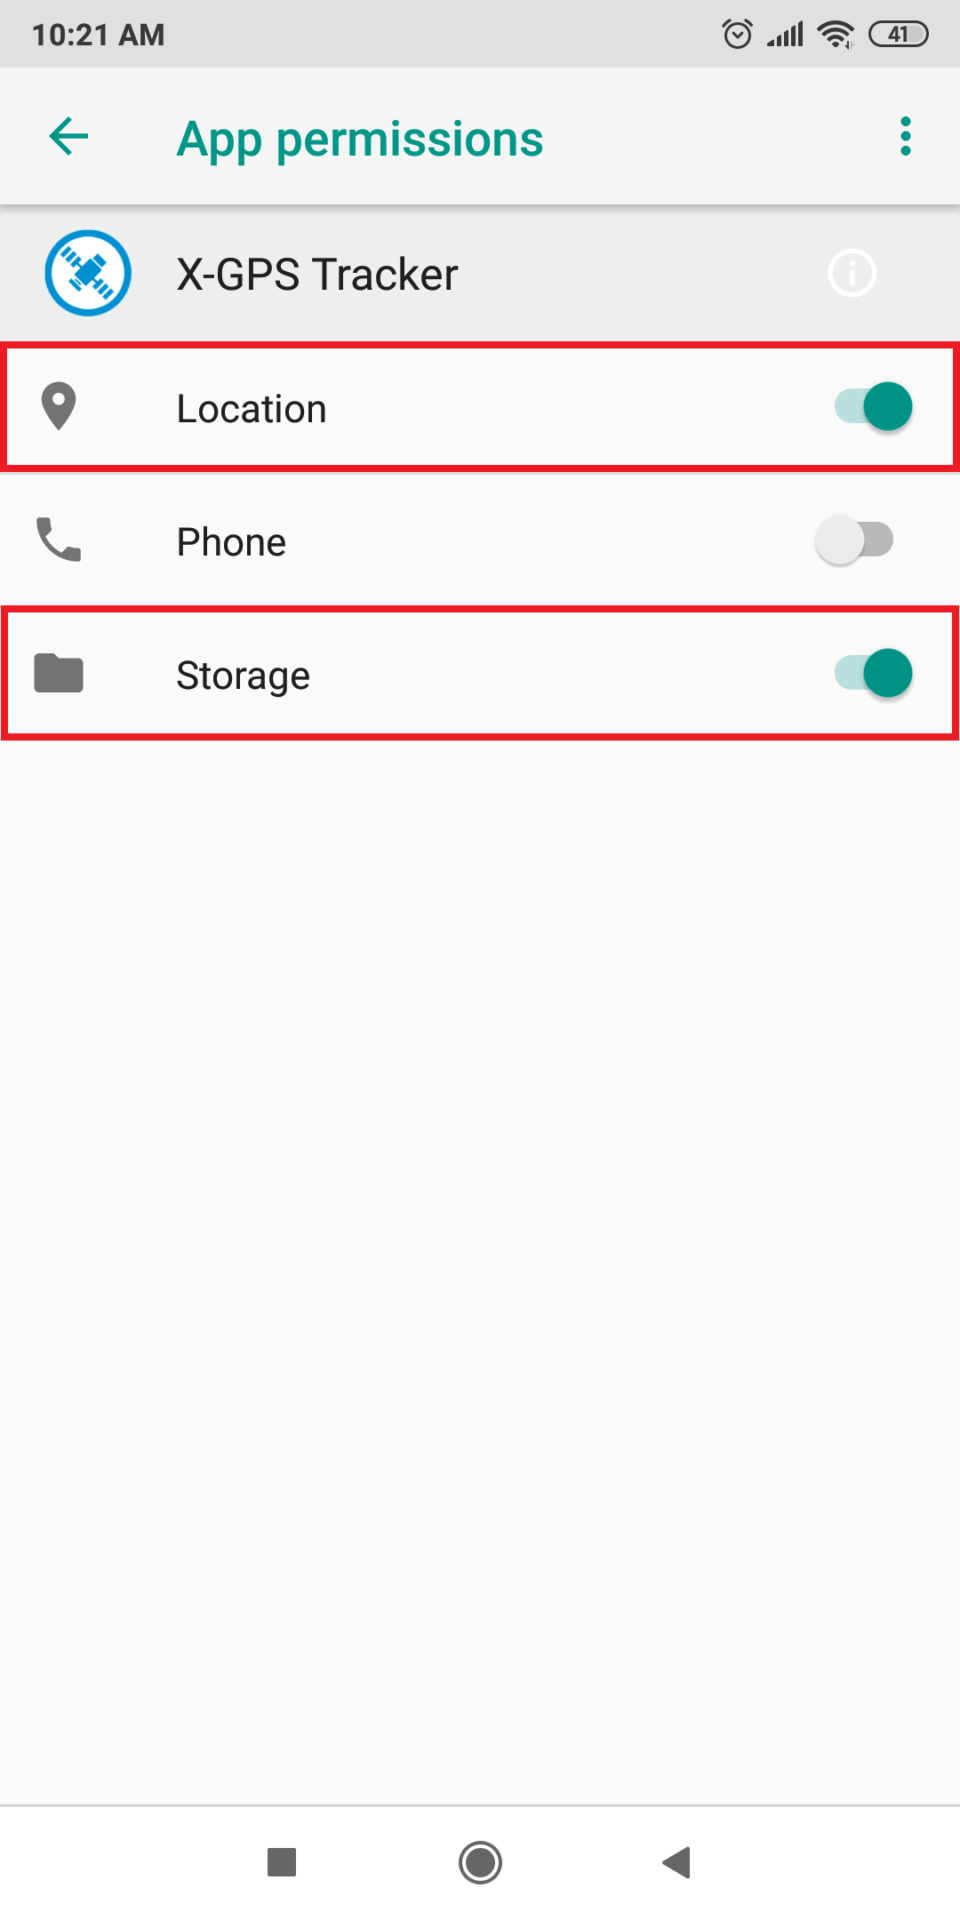 Xiaomi: Key settings